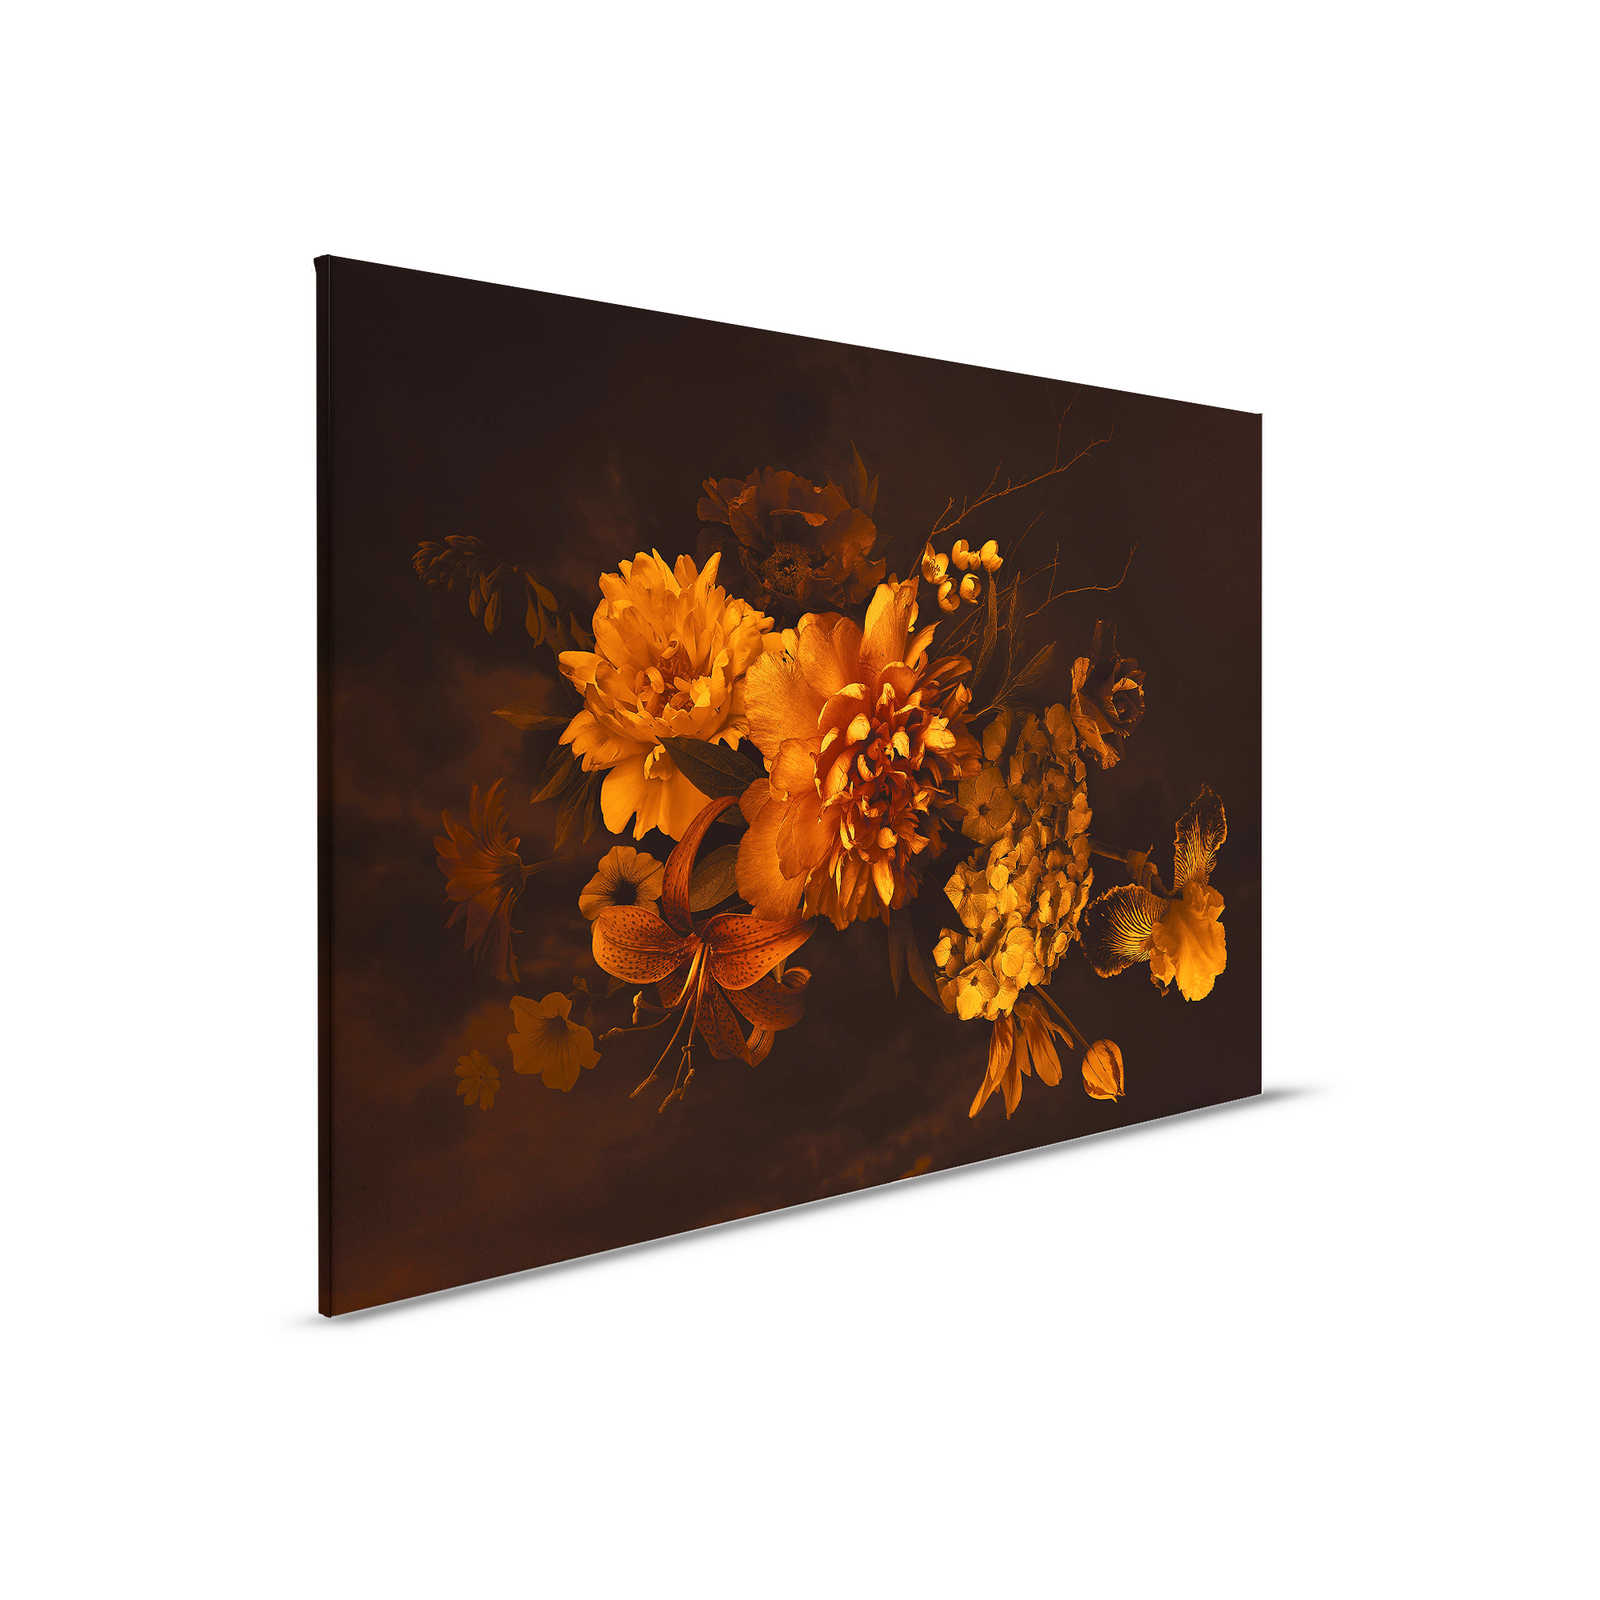         Leinwand mit Botanical-Style Blumenstrauß | orange schwarz – 0,90 m x 0,60 m
    